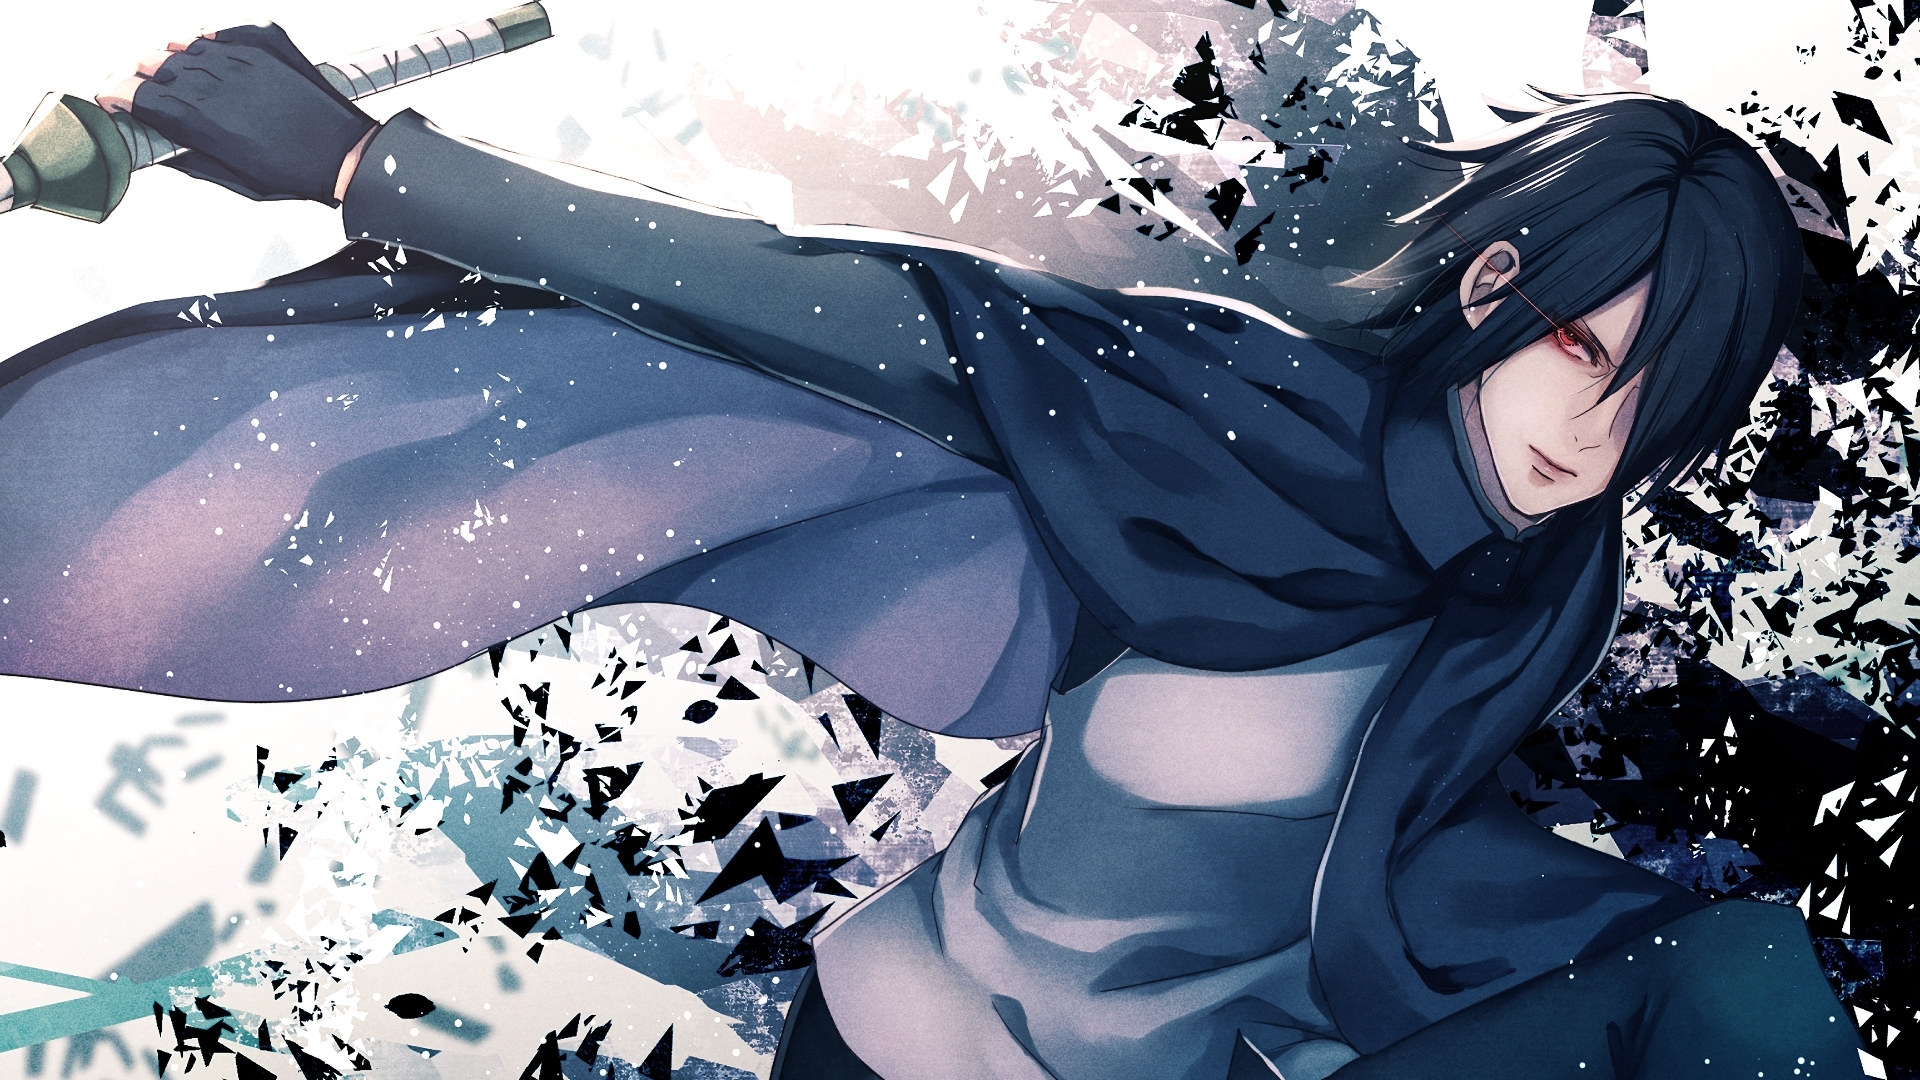 fond d'écran sasuke hd,cheveux noirs,oeuvre de cg,anime,dessin animé,illustration